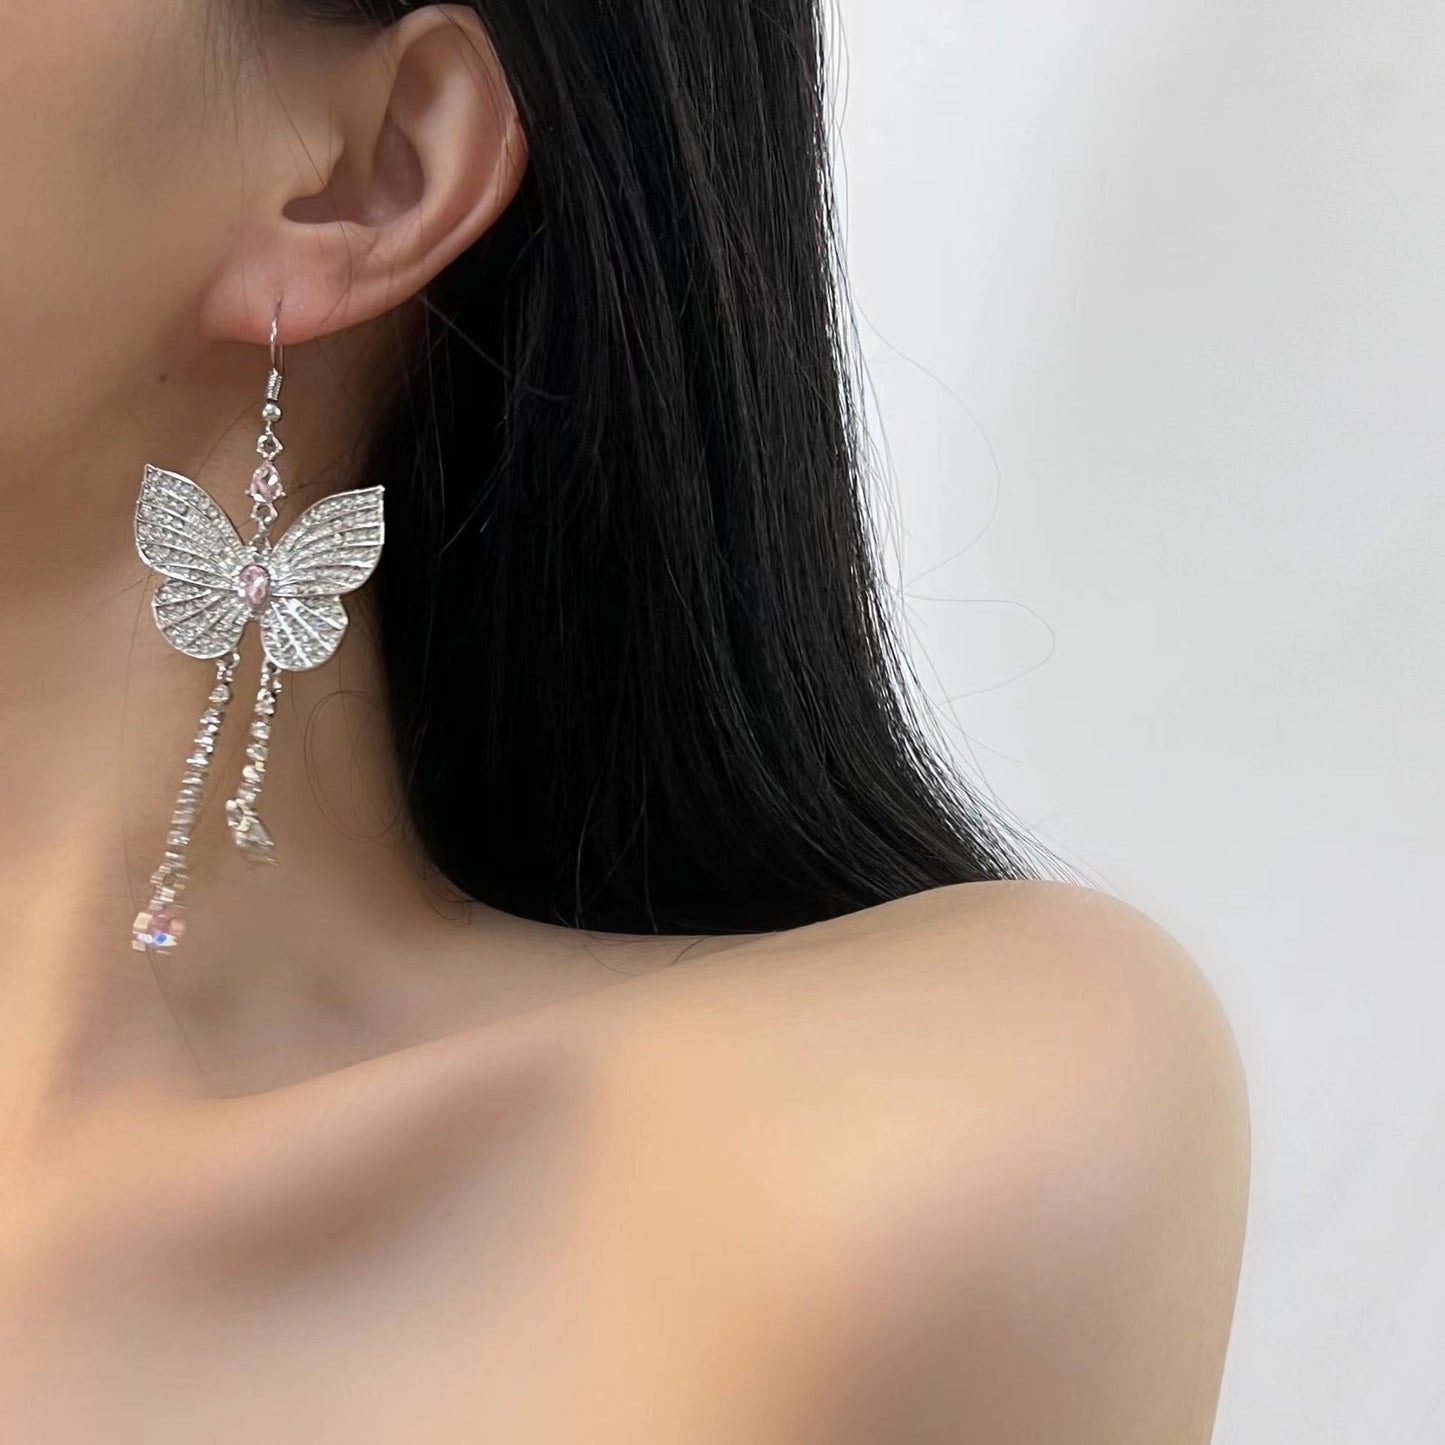 Xiaohongshu Knocking Immortal Butterfly Tassel Necklace Light Luxury Advanced Butterfly Fairy Earrings Long